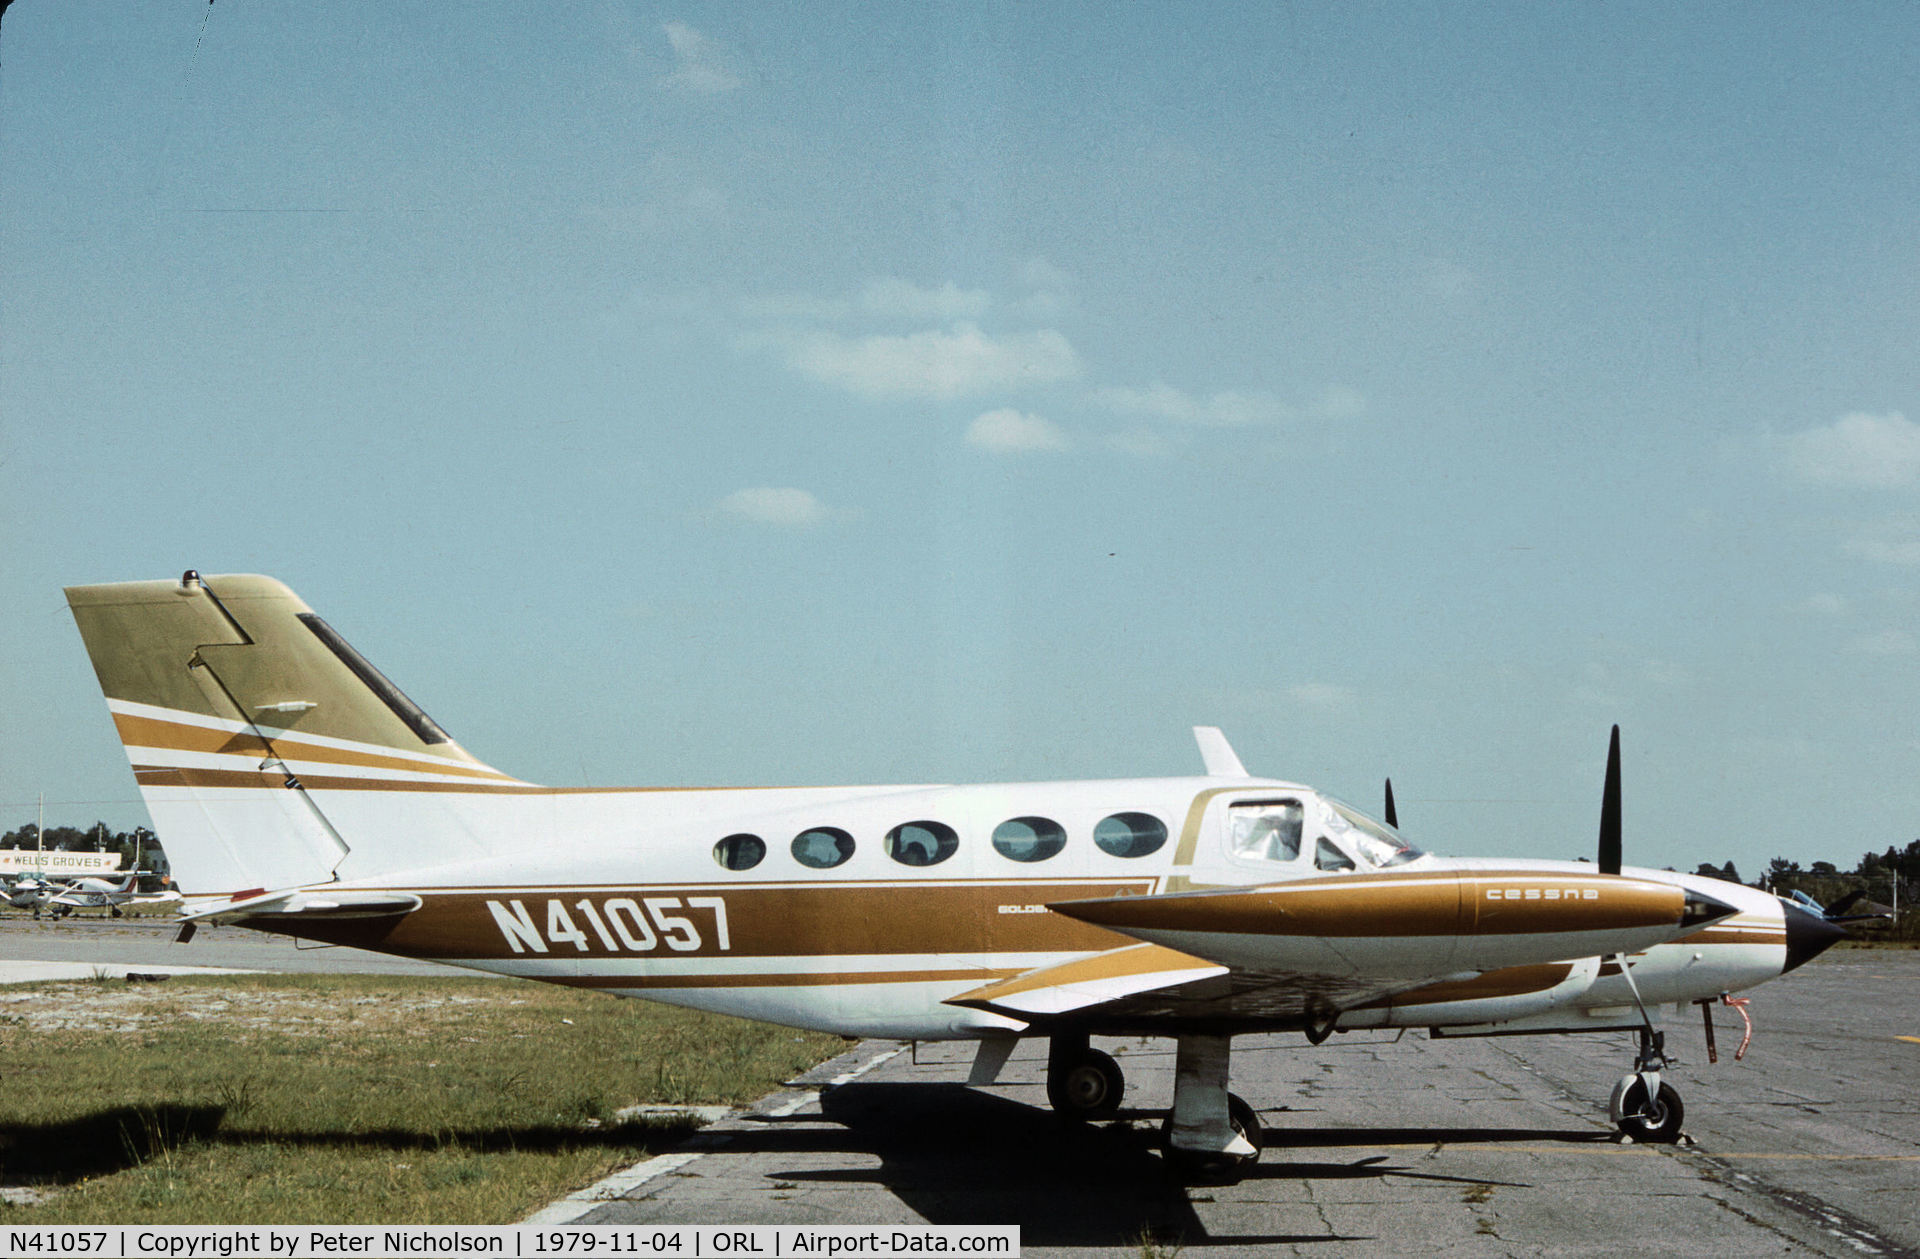 N41057, 1973 Cessna 421B Golden Eagle C/N 421B0423, Cessna 421B Golden Eagle seen at Herndon in November 1979.